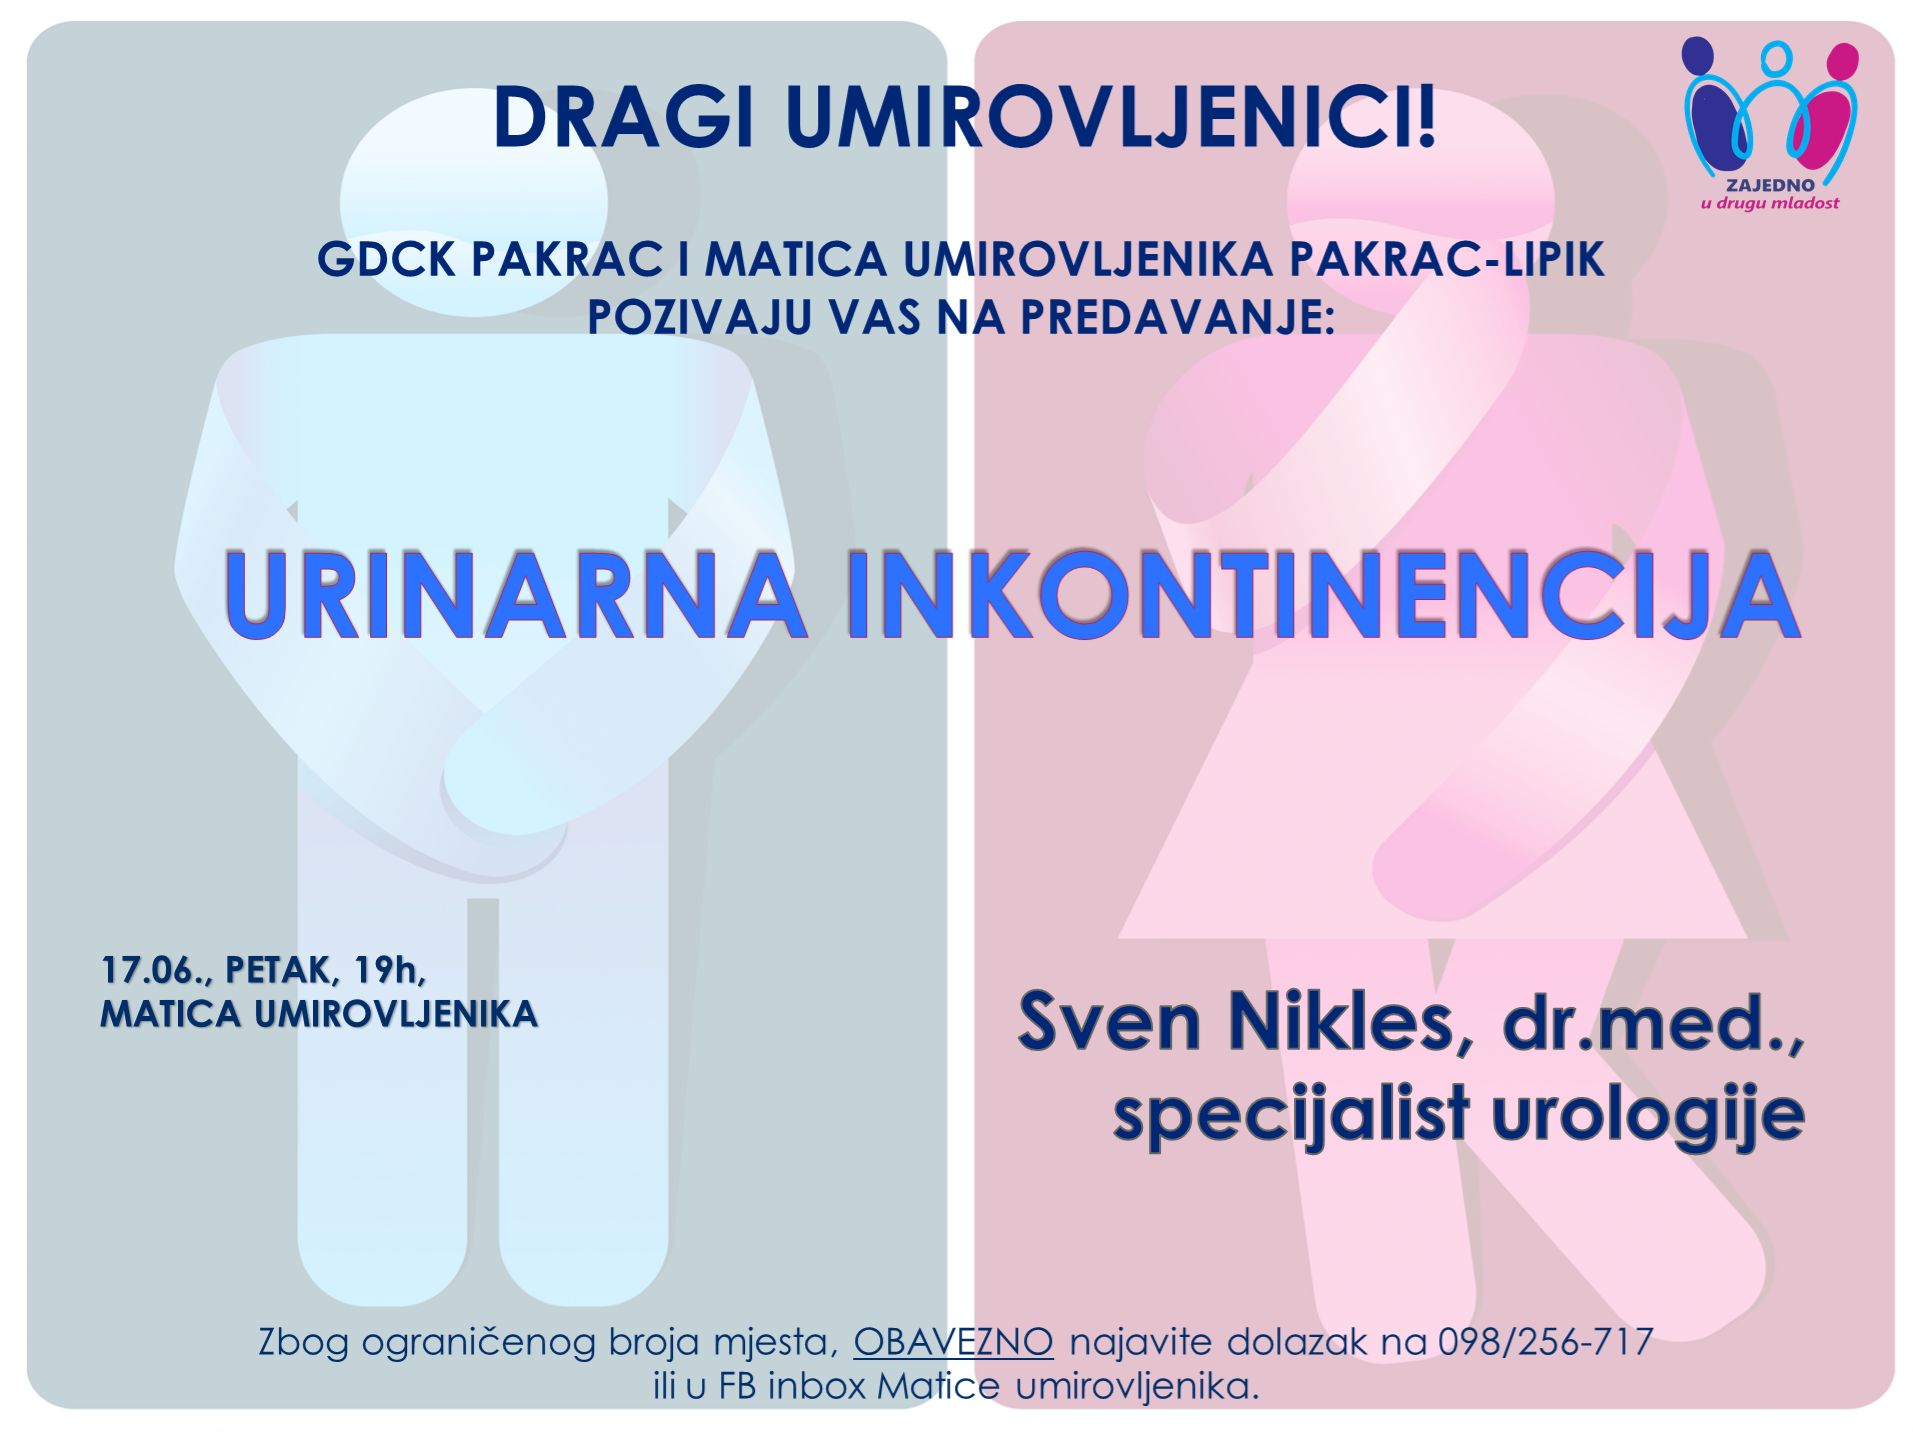 (PROMO) "ZAJEDNO U DRUGU MLADOST" Predavanje o urinarnoj inkontinenciji